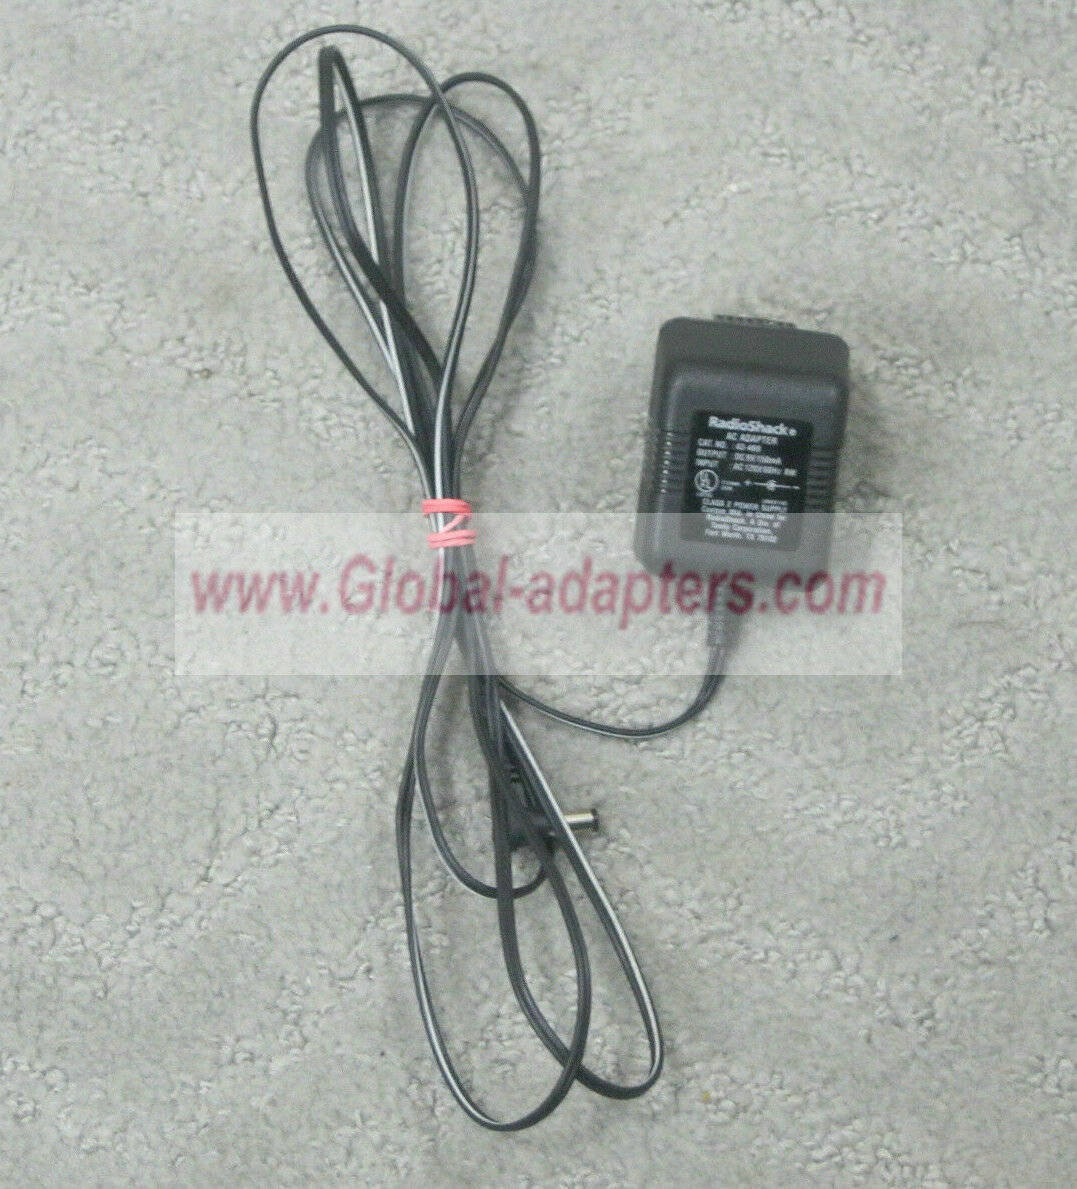 NEW 9V 150mA RadioShack 43-469 AC Power Adapter - Click Image to Close